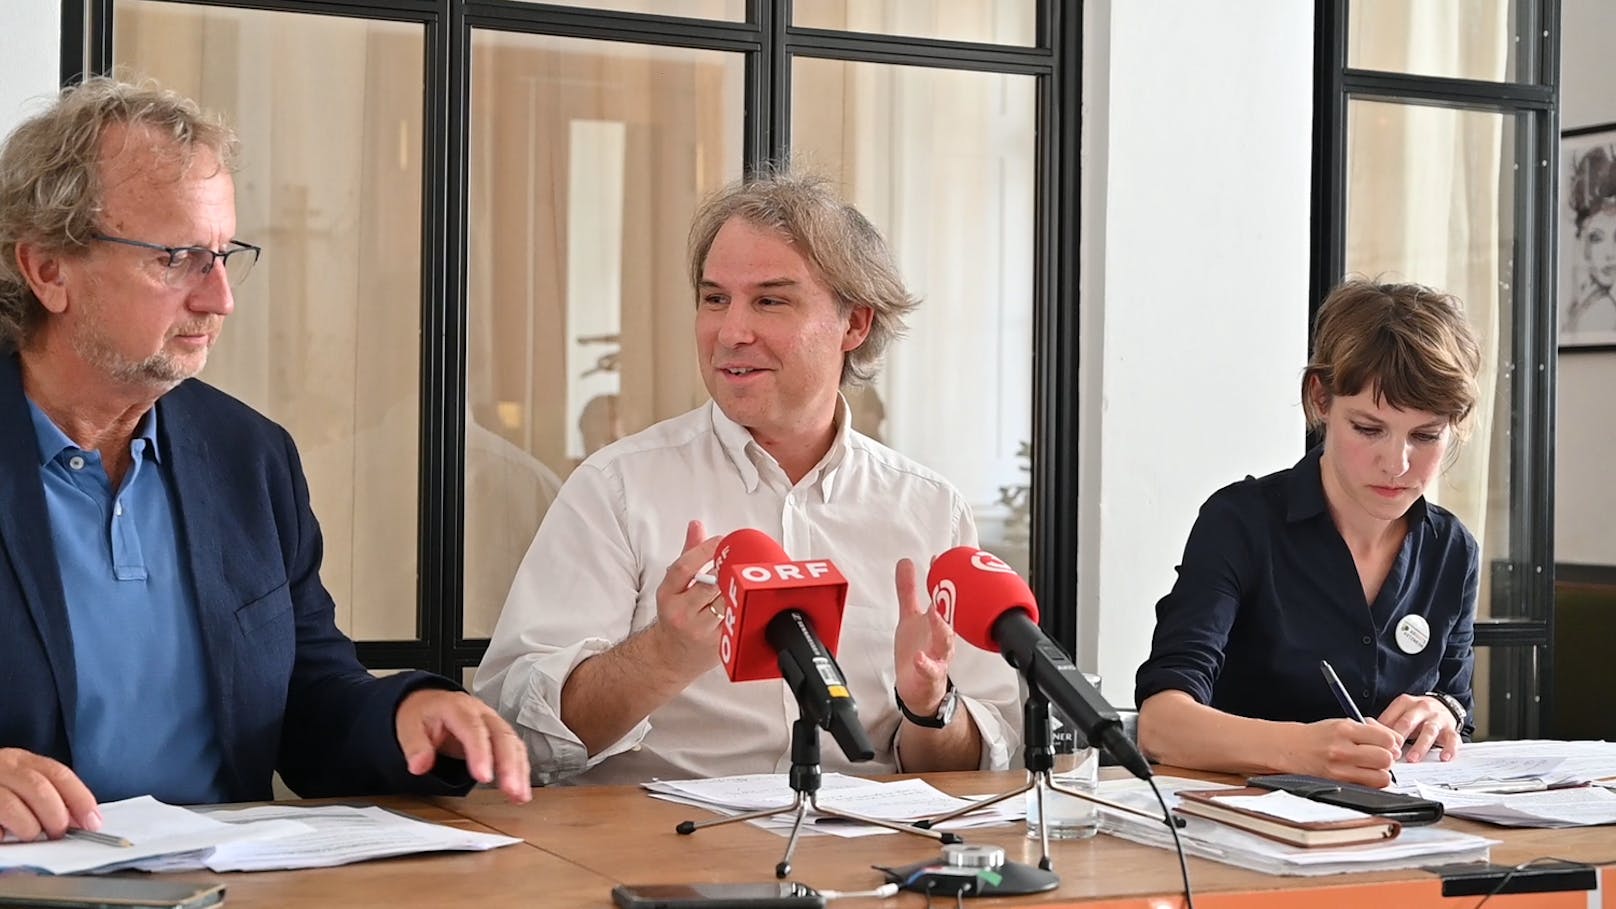 Erwachsenenvertreter Norbert Krammer, Sozialexperte Martin Schenk und Barbara Bühler vom niederösterreichischen Armutsnetzwerk (v.l.n.r.)